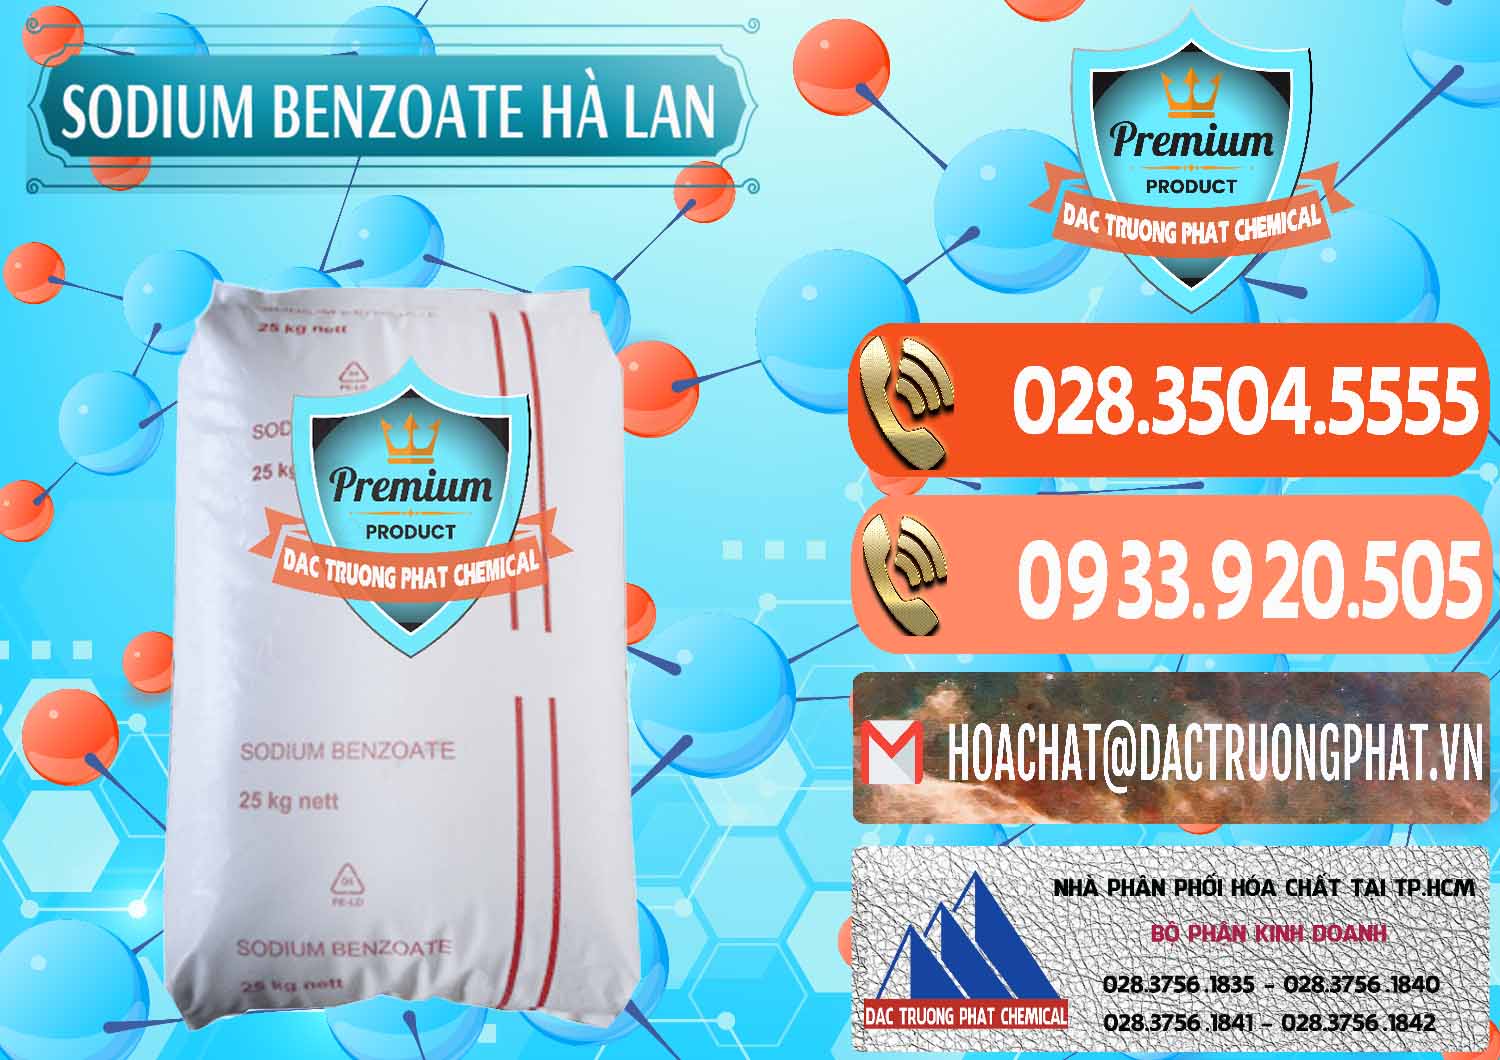 Chuyên bán & cung ứng Sodium Benzoate - Mốc Bột Chữ Cam Hà Lan Netherlands - 0360 - Nơi chuyên bán & cung cấp hóa chất tại TP.HCM - hoachatmientay.com